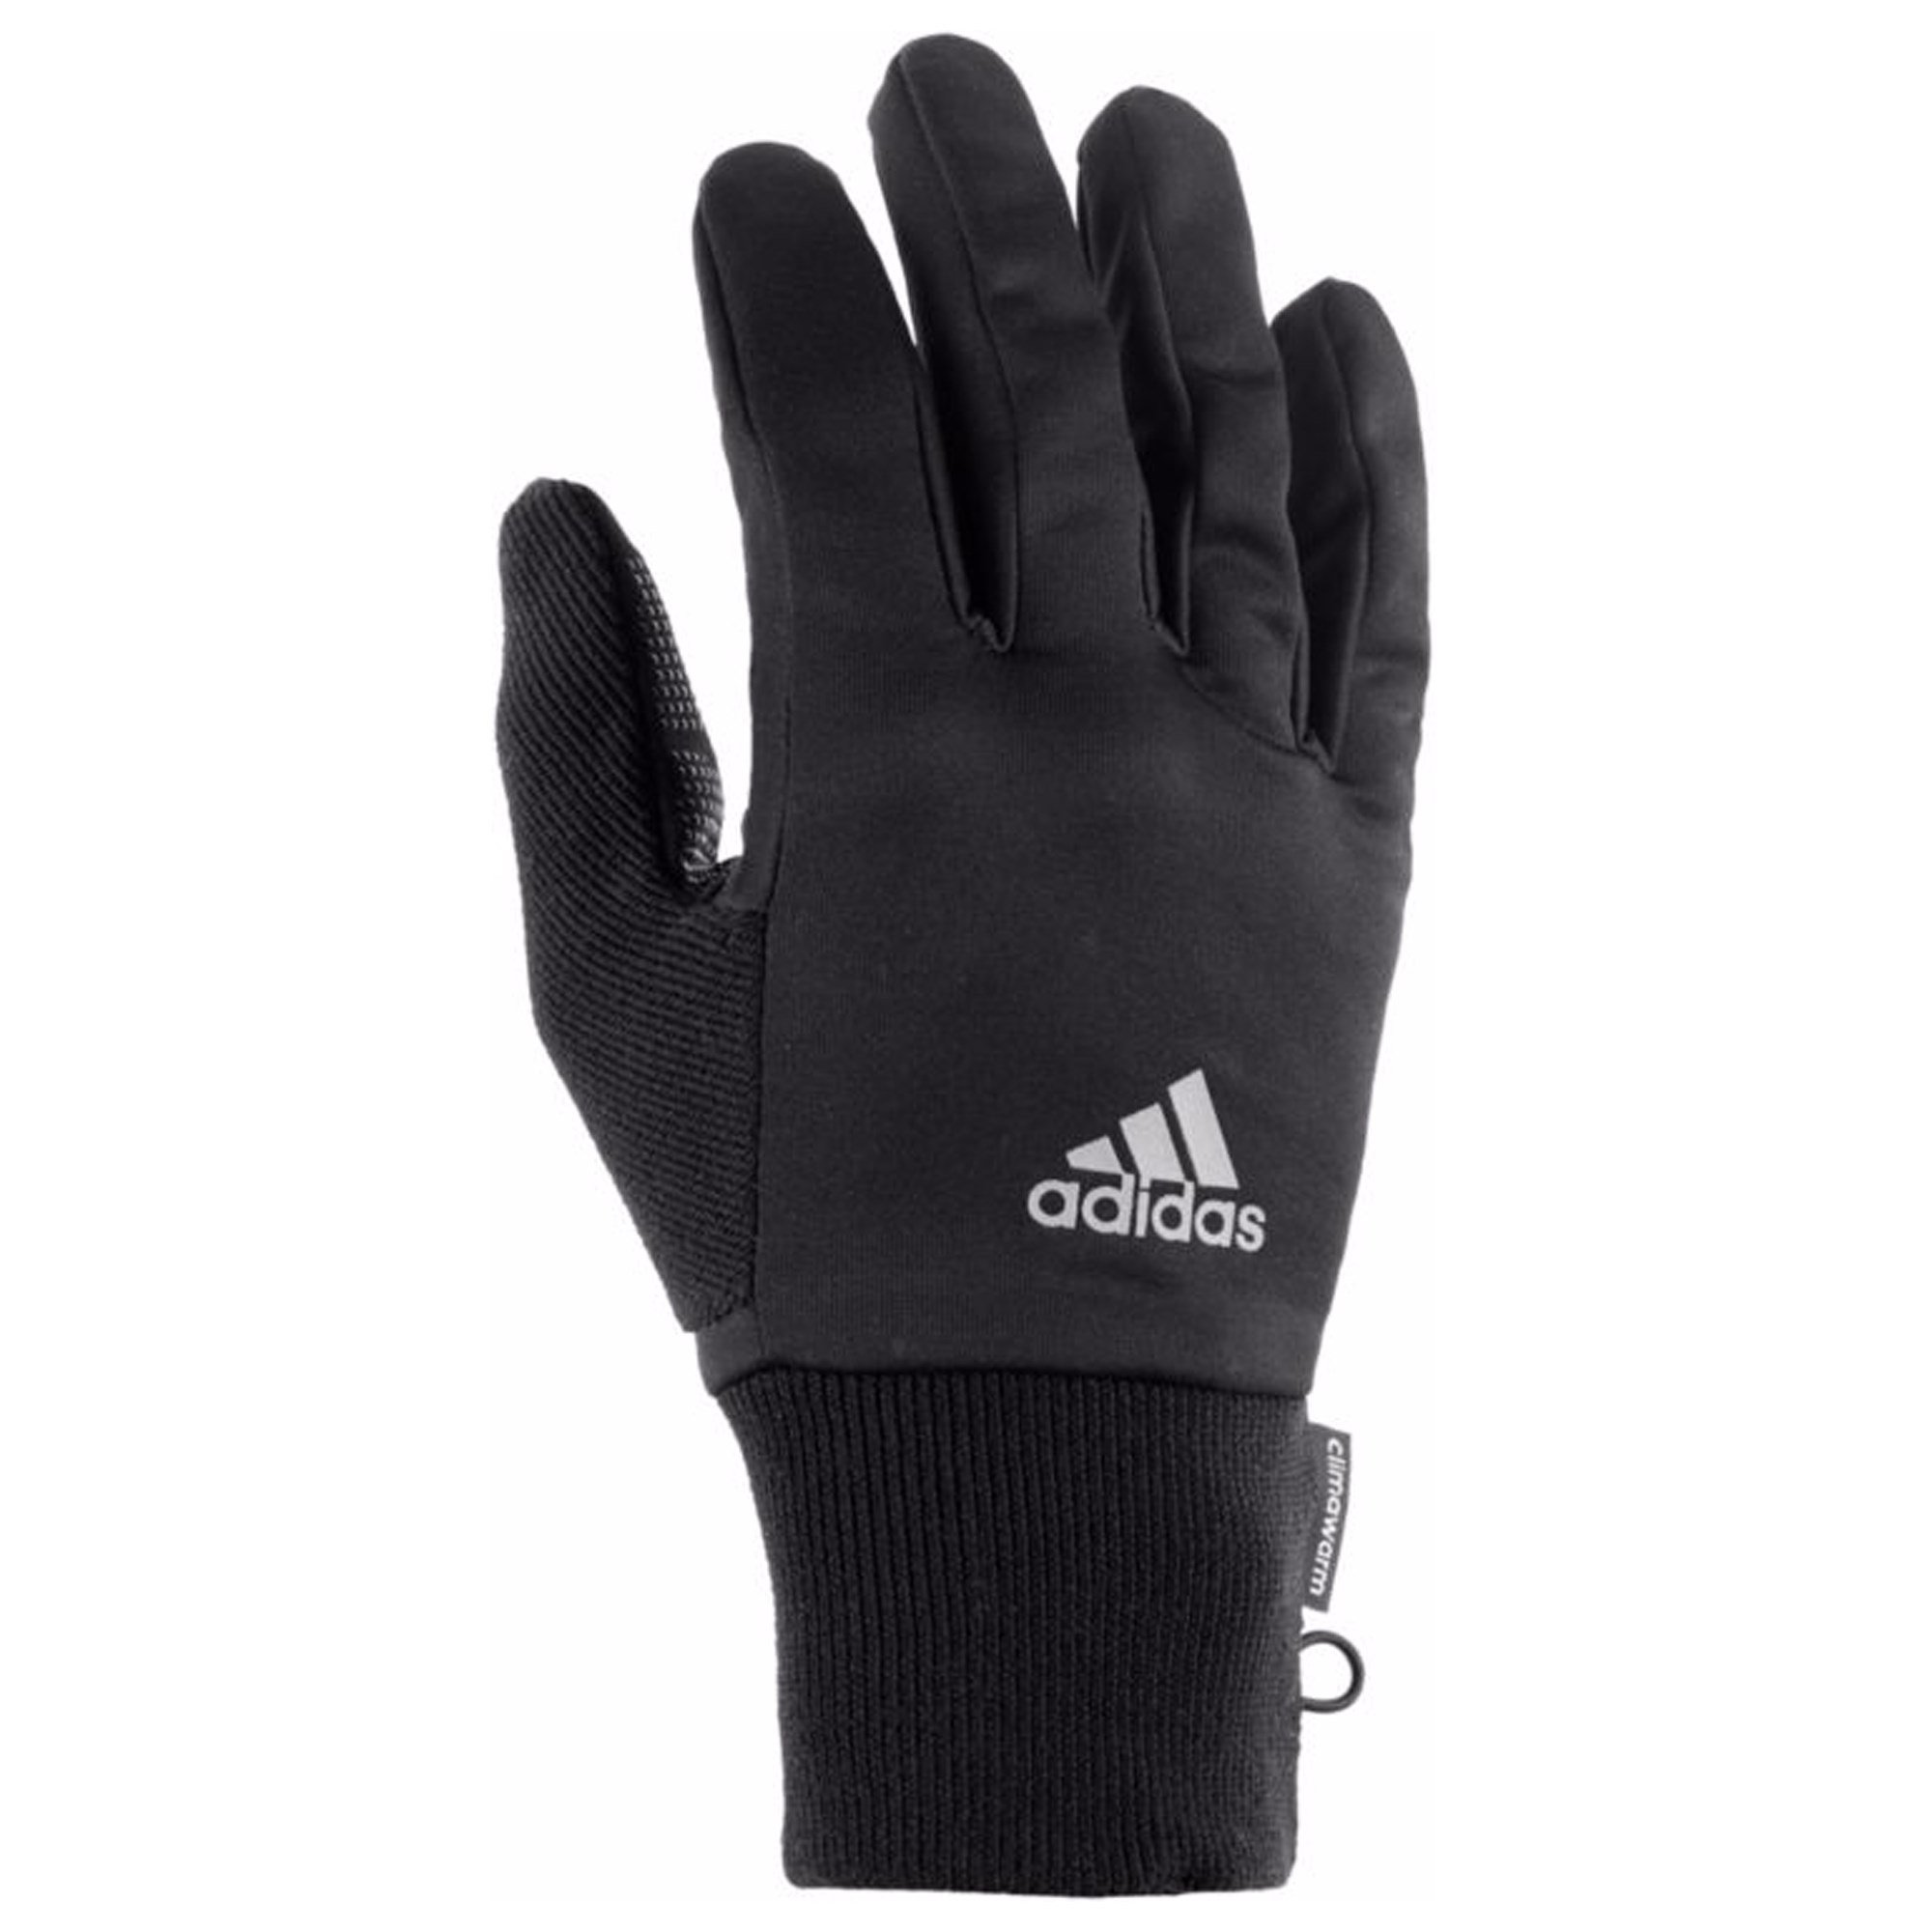 adidas Run Climawarm Glove Eldiven Ürün kodu: S94191 | Etichet Sport